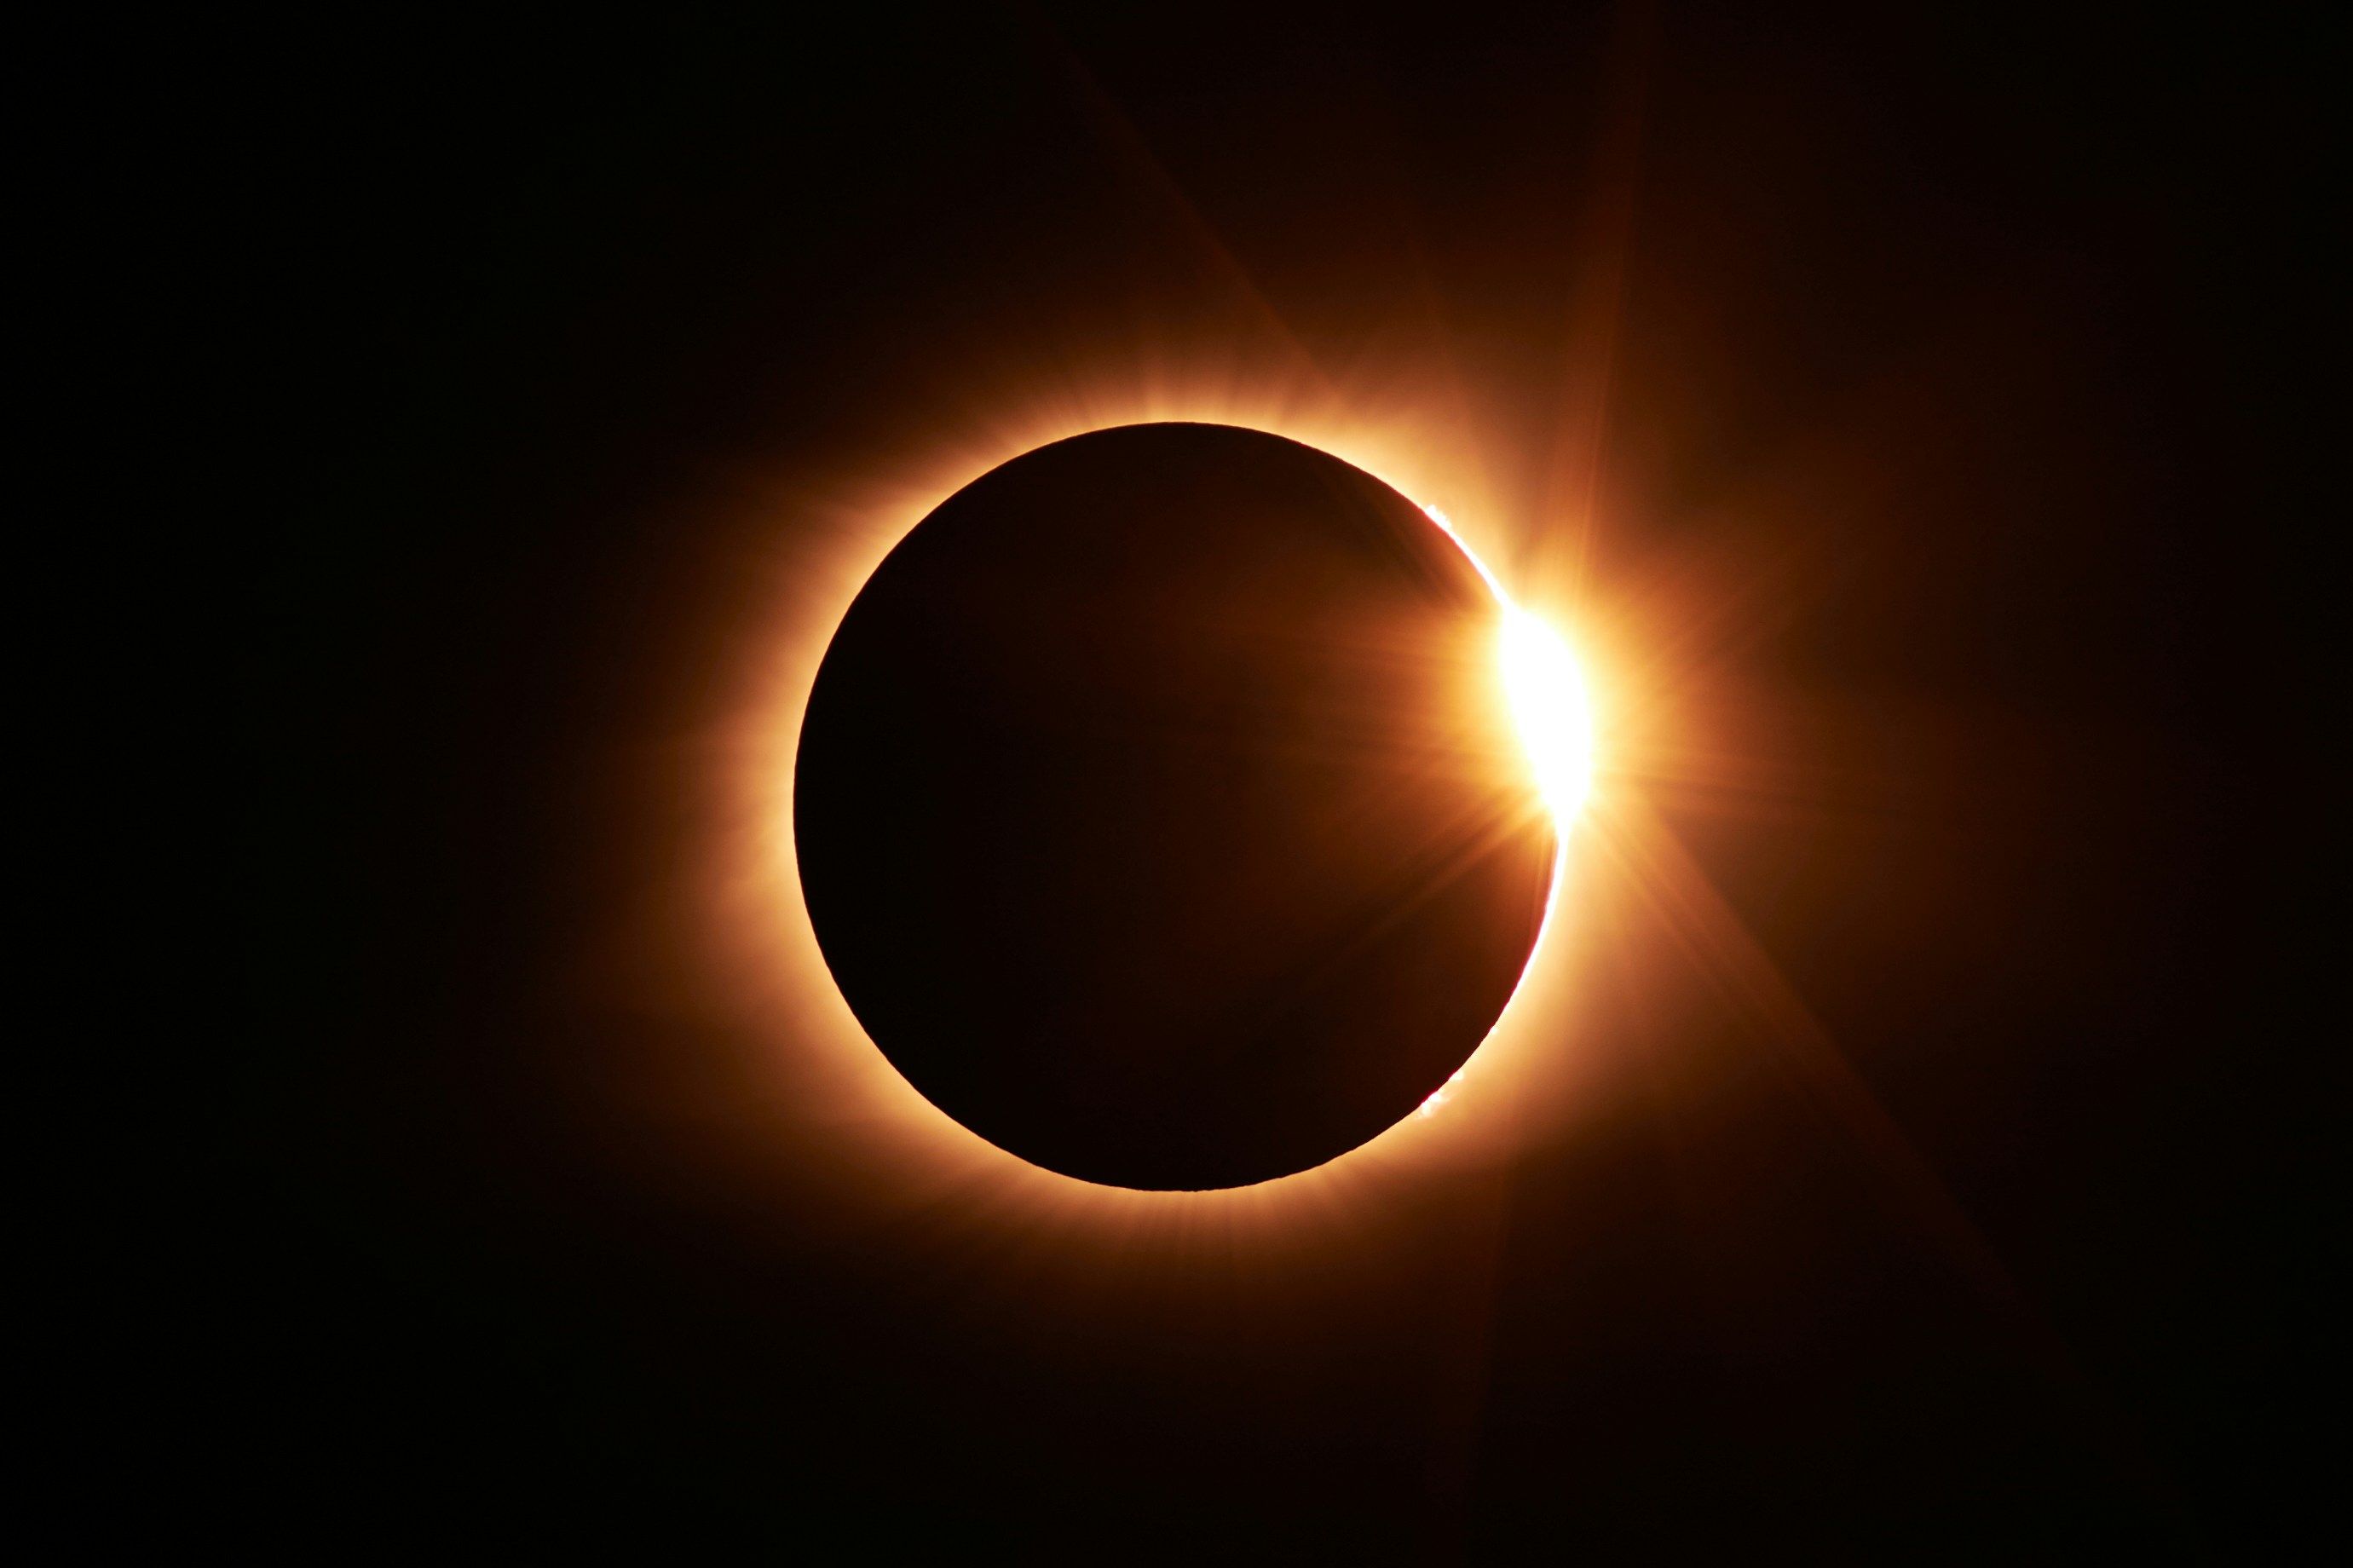 La NASA met en garde contre les smartphones et l'éclipse solaire